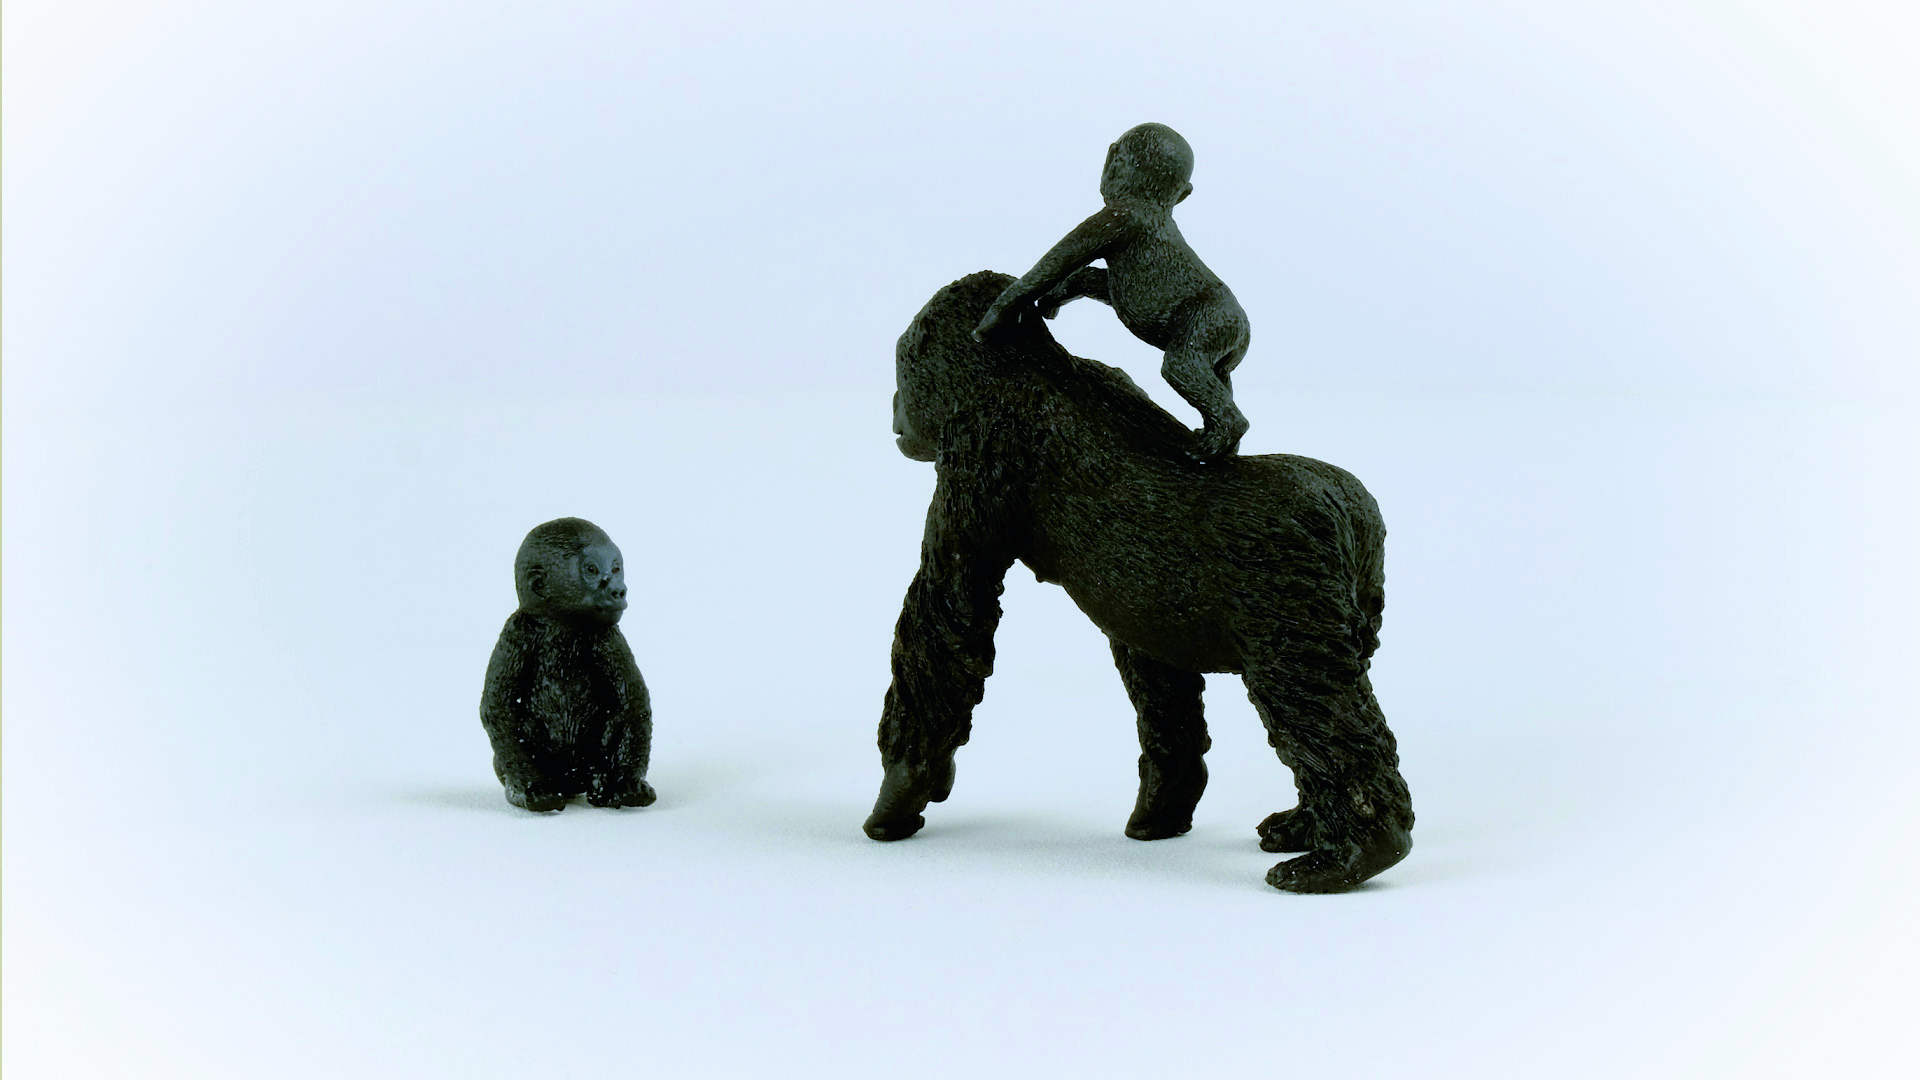 SCHLEICH Wild Life 42601 Gorilla Flachland Spielfigur Schwarz Familie